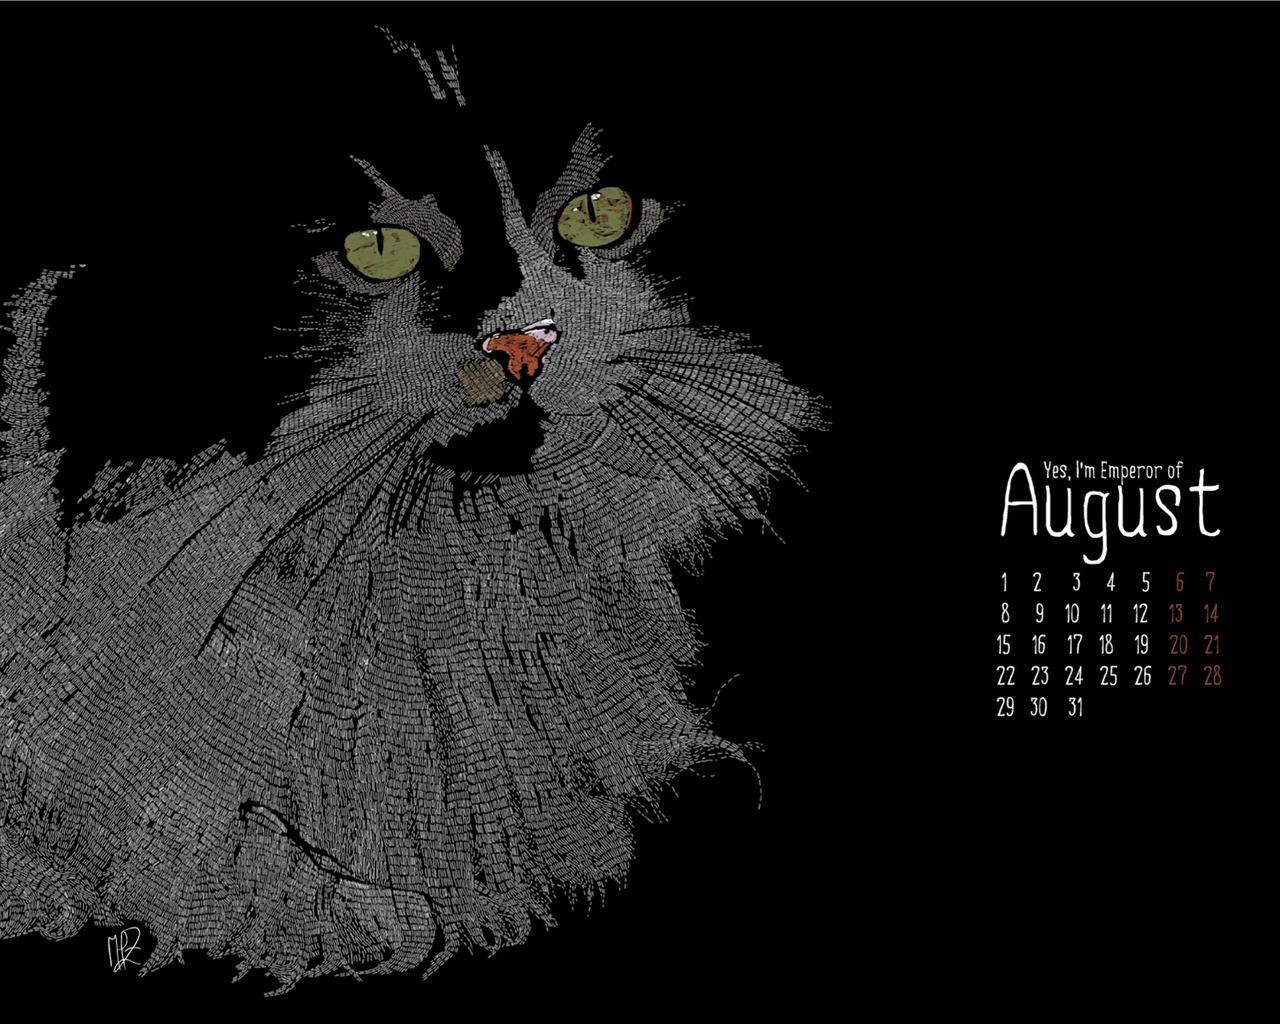 August 2011 calendar wallpaper (2) #14 - 1280x1024